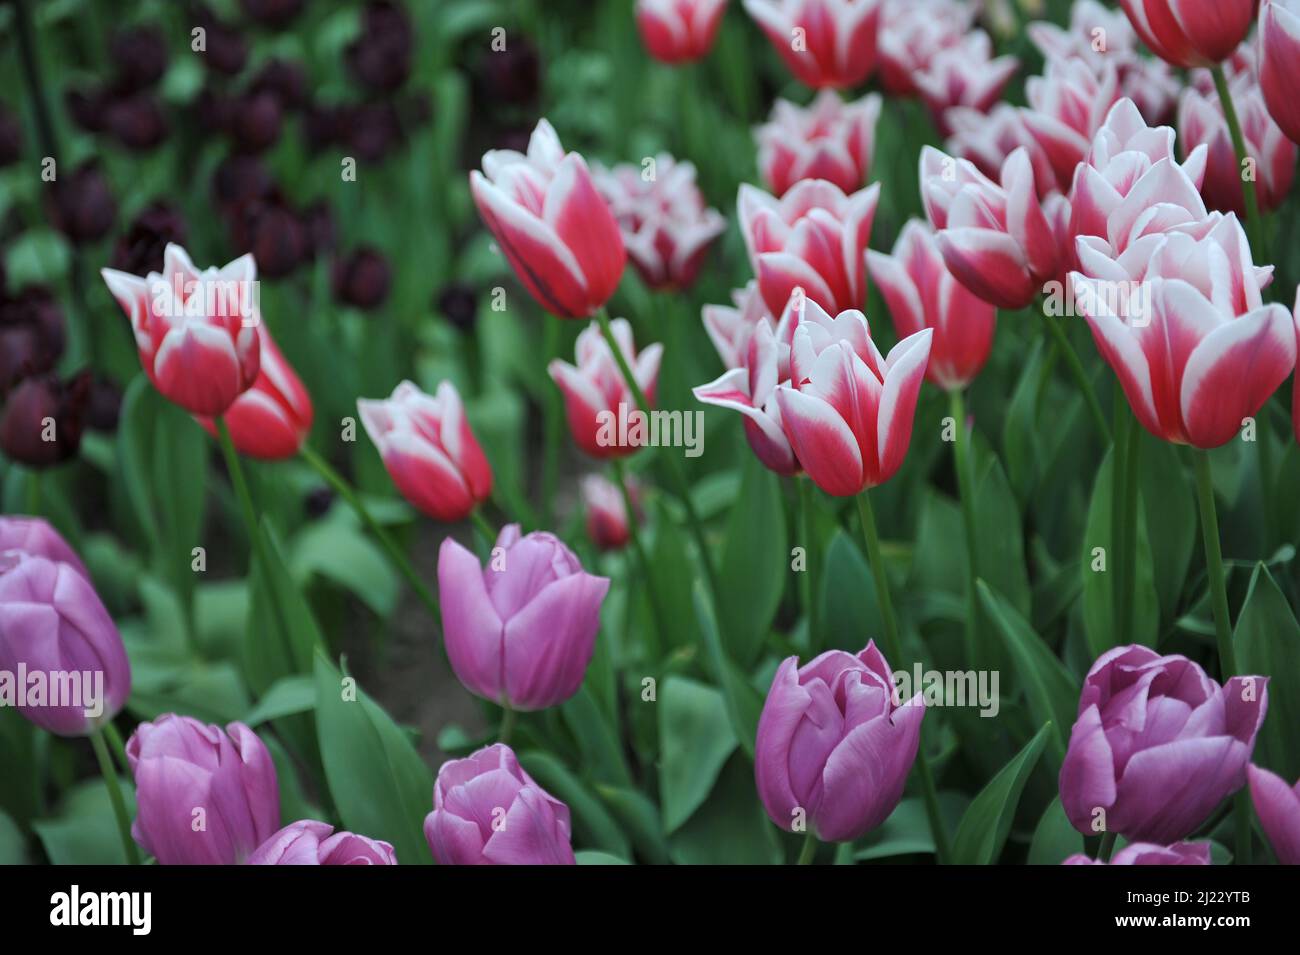 Rot mit weißen Rändern Triumph Tulpen (Tulipa) der Liebestrank blüht im April in einem Garten Stockfoto